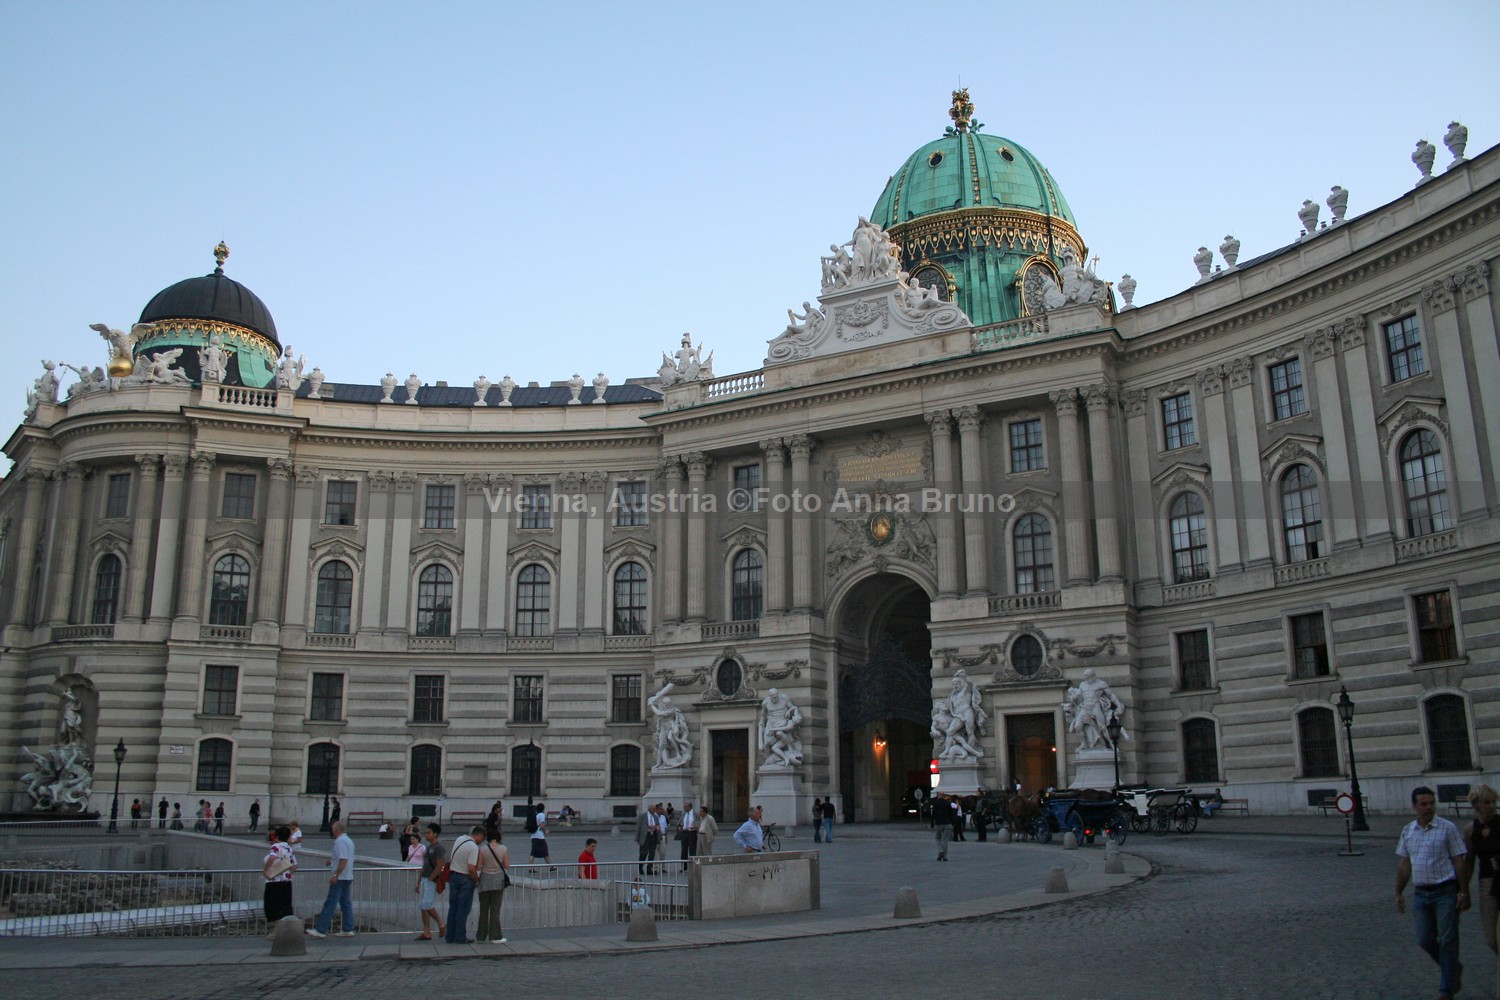 Vienna, Austria - © Foto Anna Bruno/FullTravel